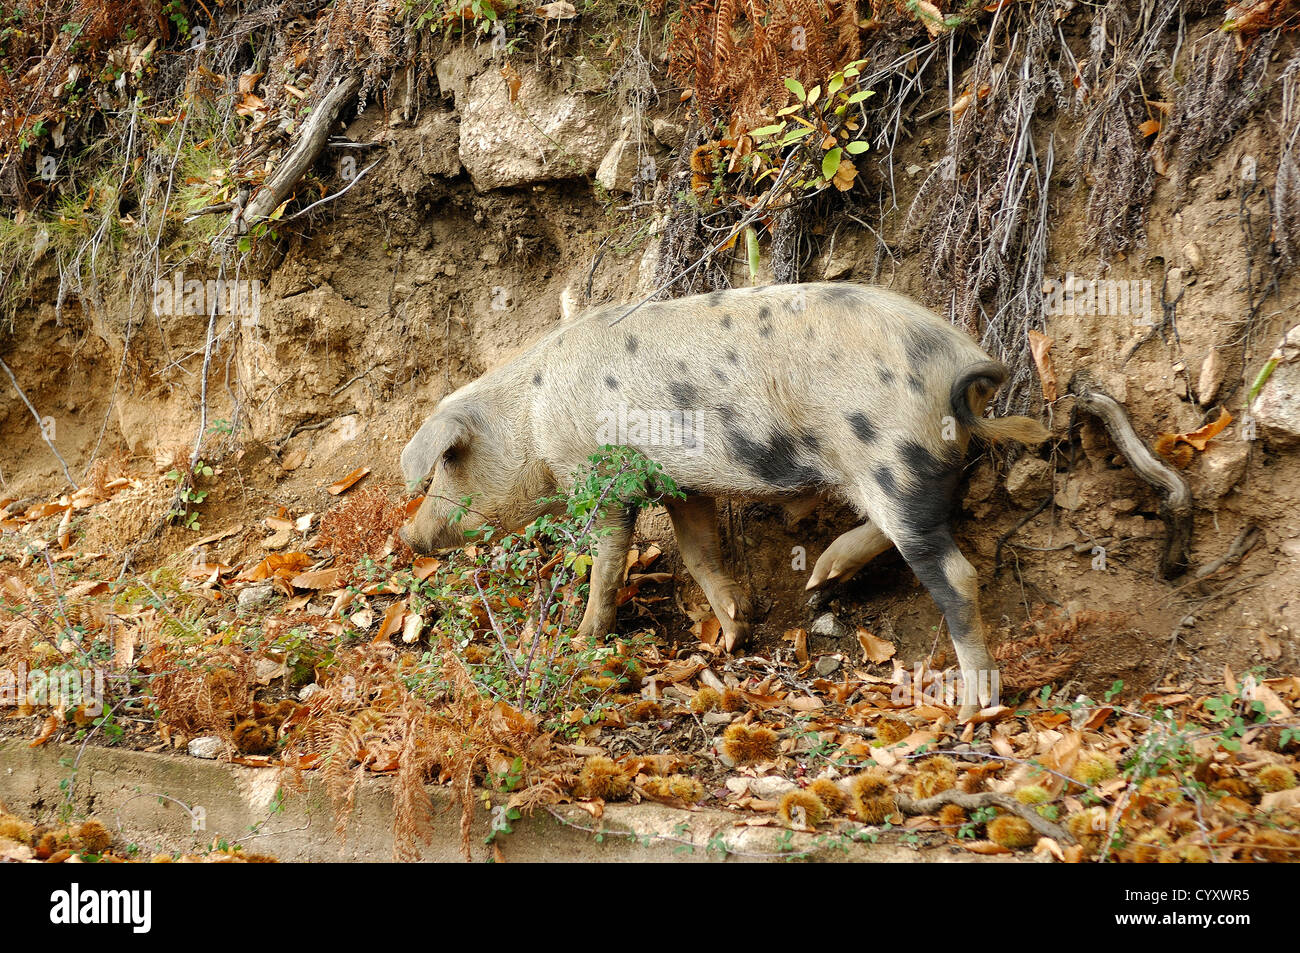 cochon sauvage corse, dans son milieux favoris, chataigneraie de Cristinacce  Corse du Sud Stock Photo